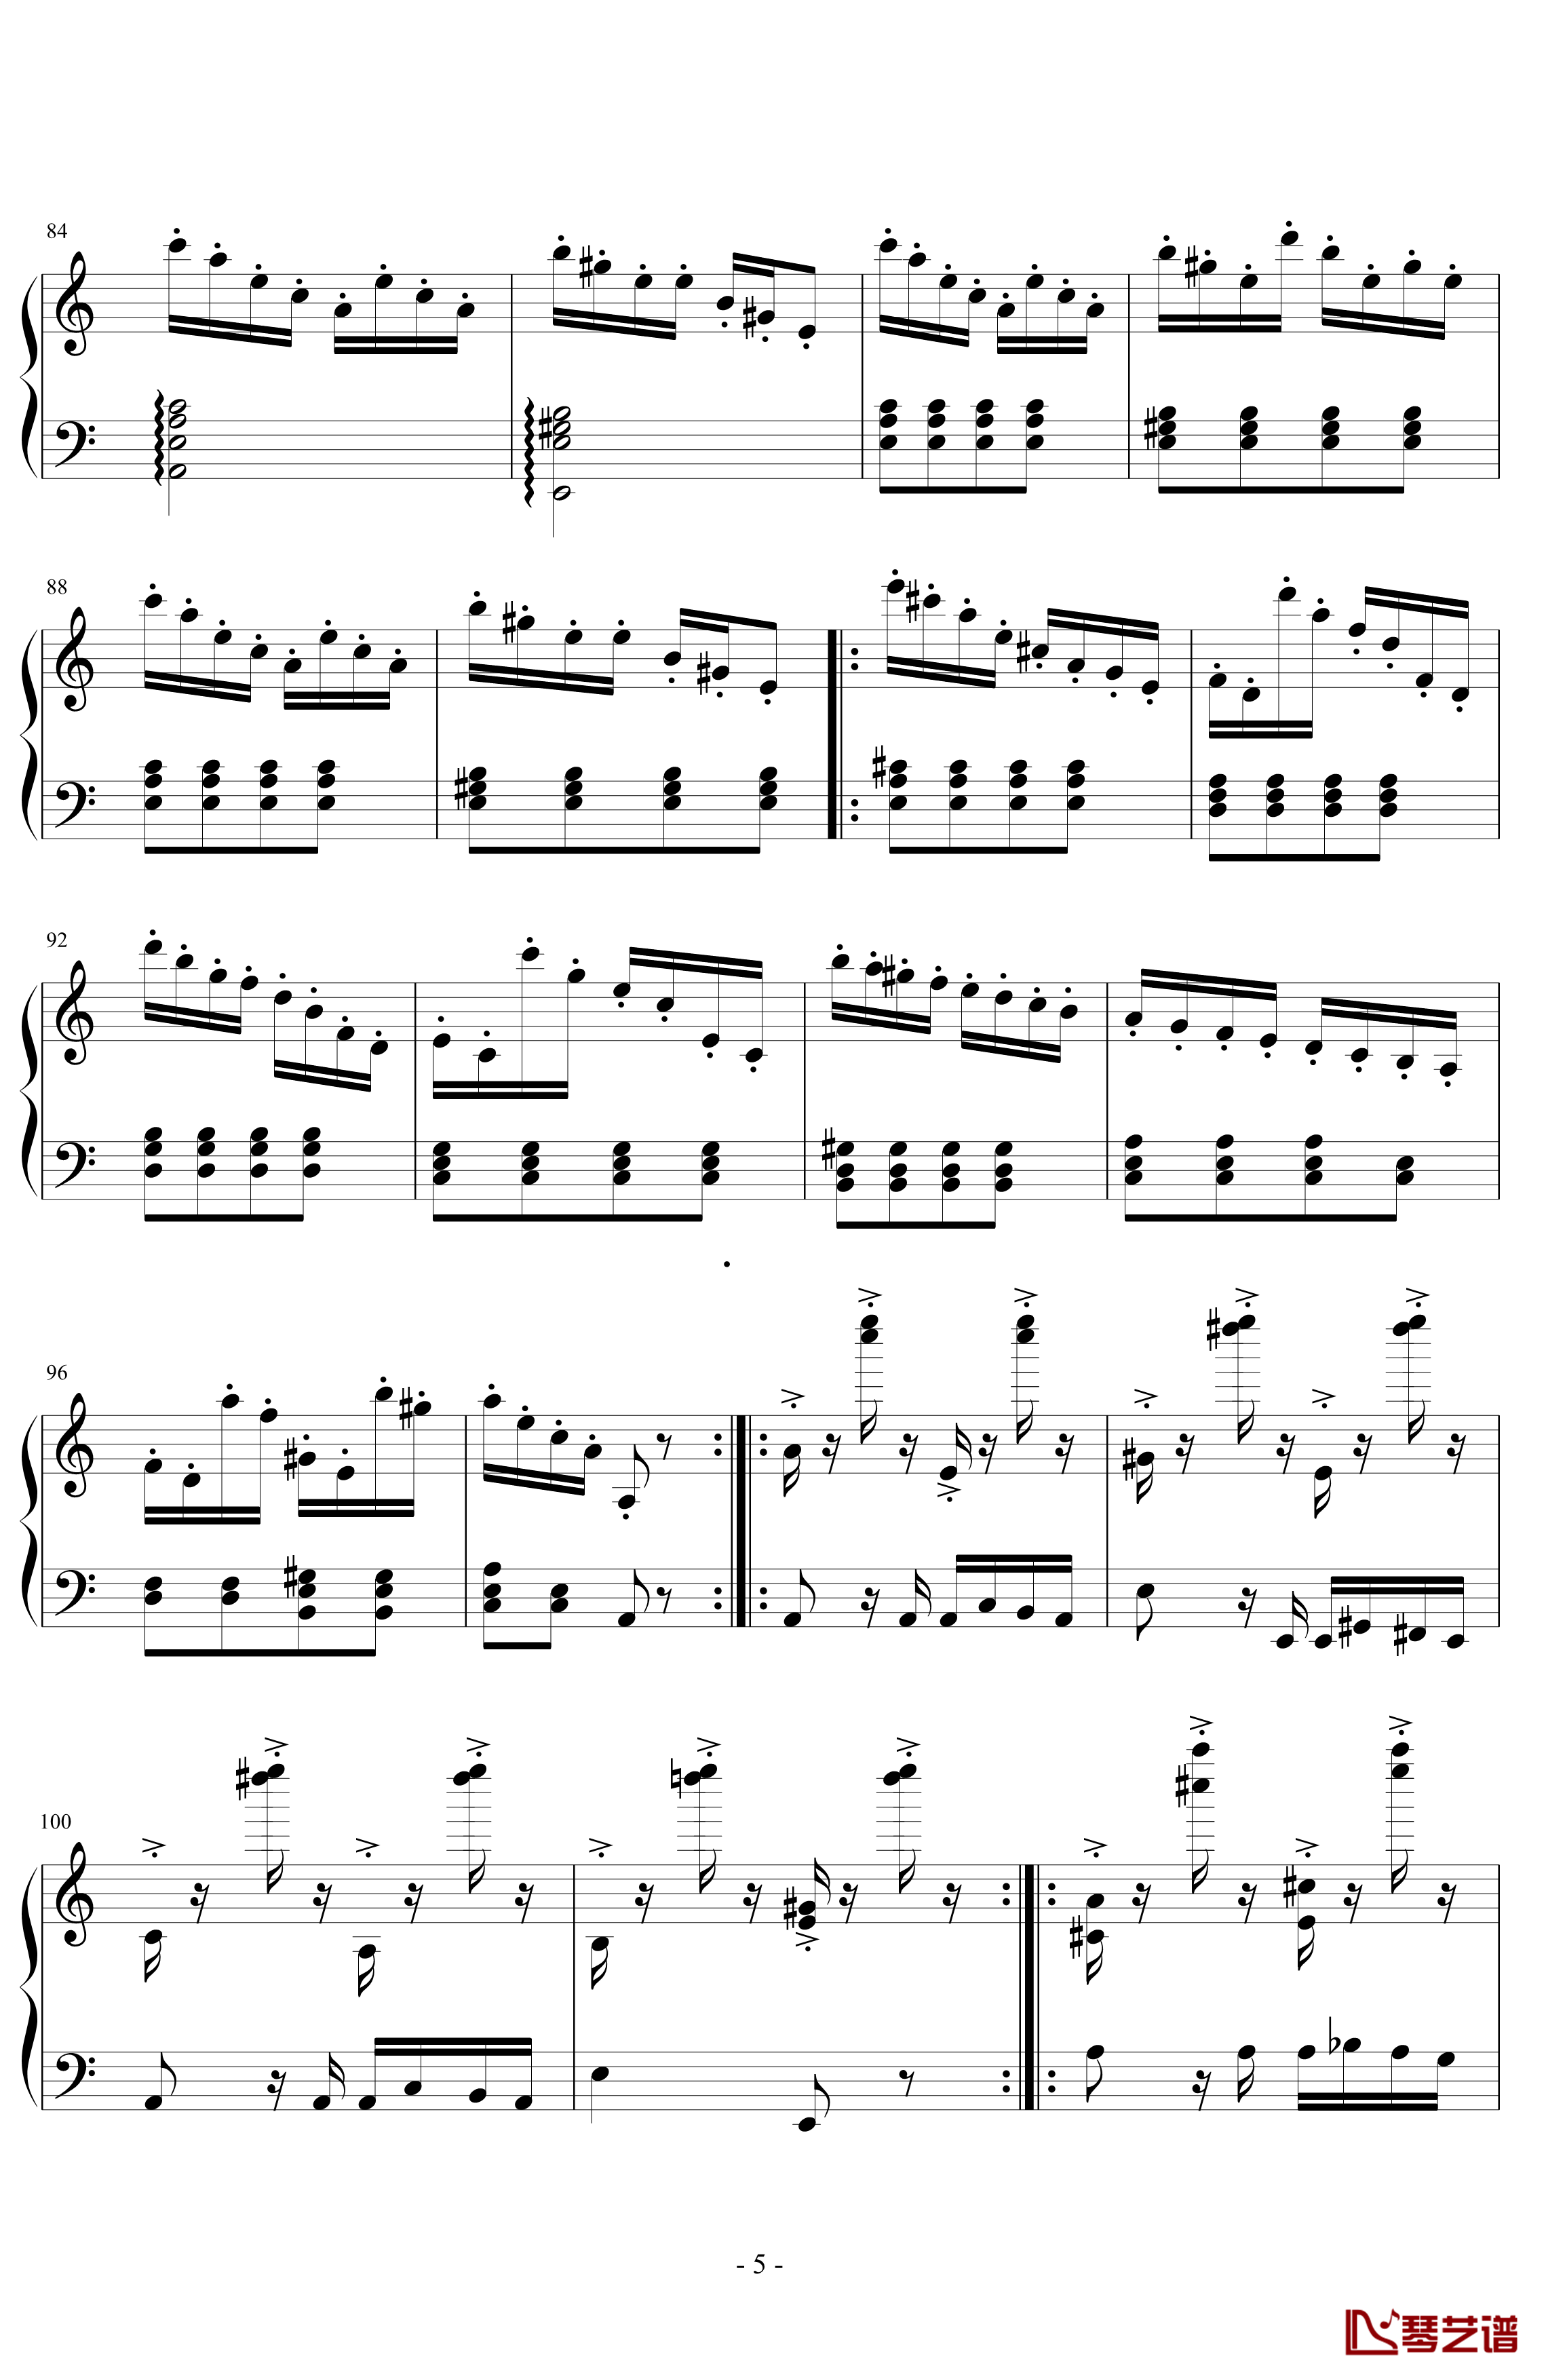 经典主题变奏曲钢琴谱-丁晓峰5